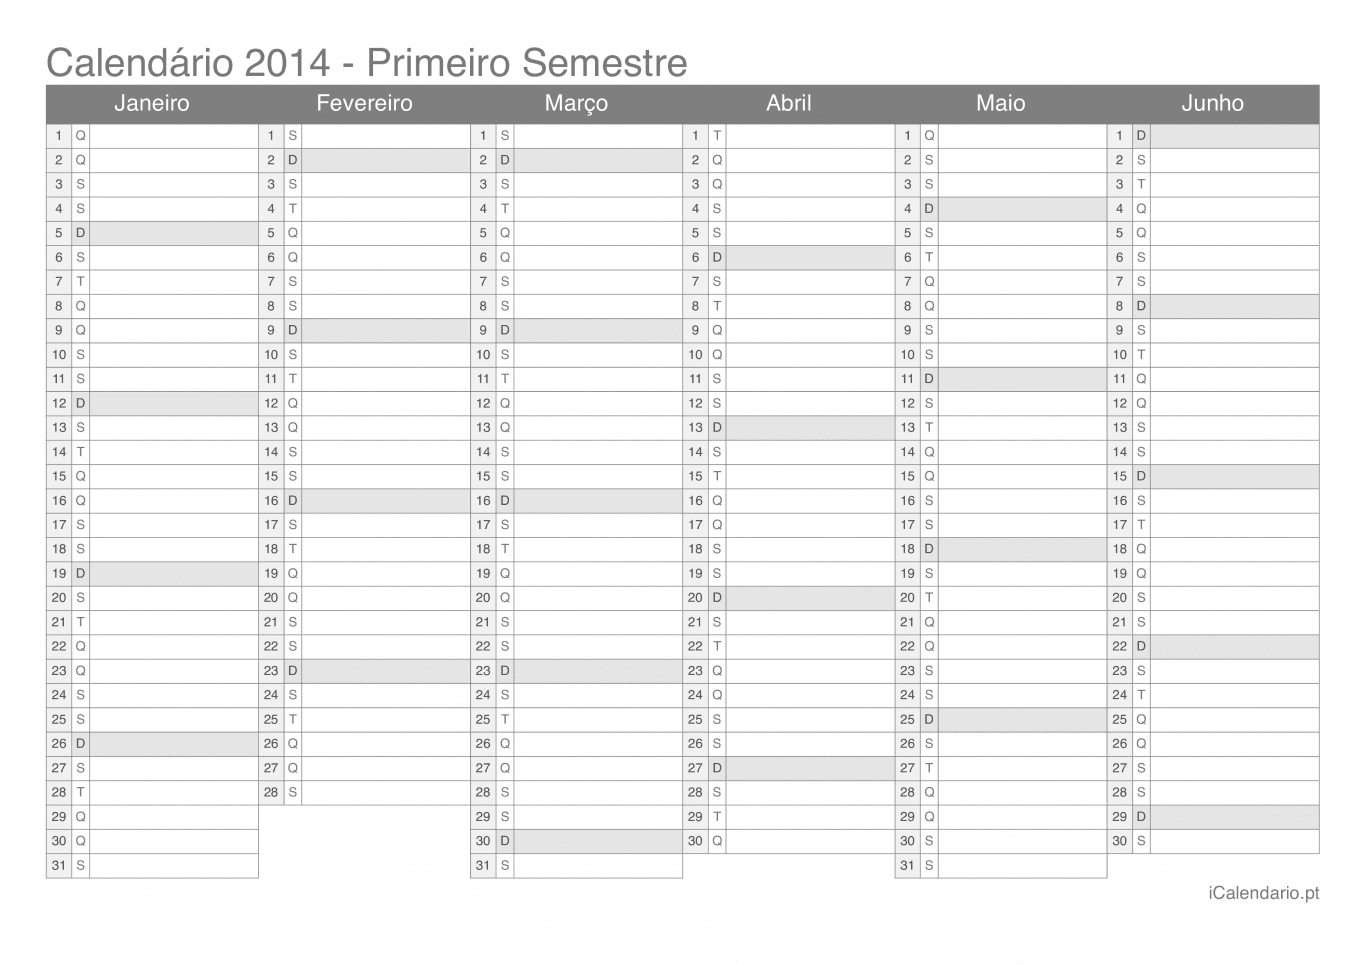 Calendário por semestre 2014